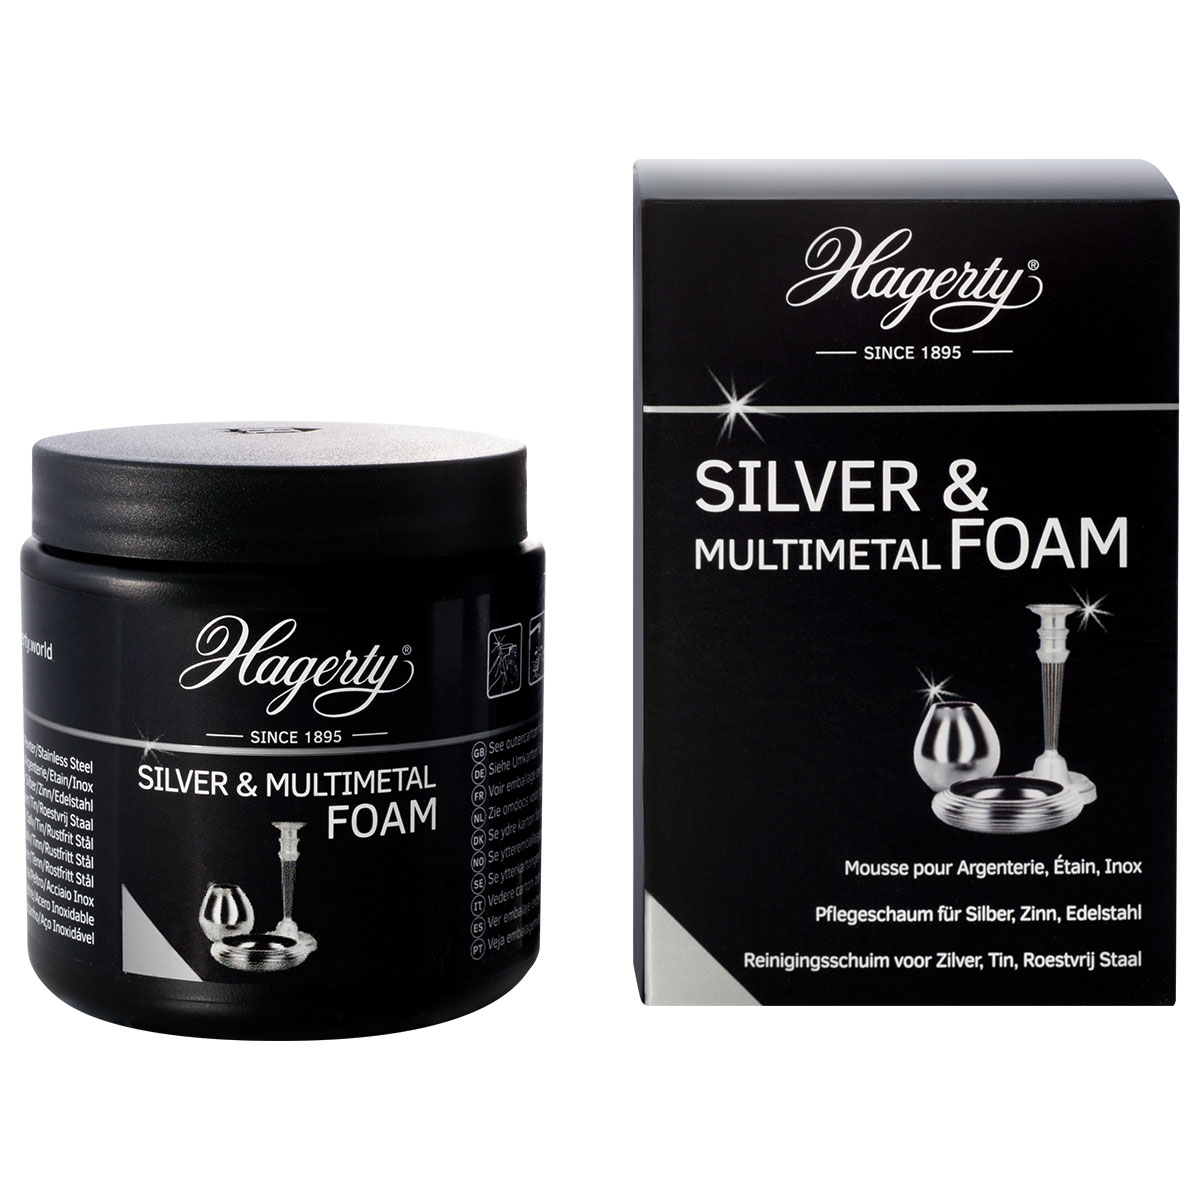 Hagerty Silver & Multimetal Foam, schäumende Paste für Silber, Zinn und Edelstahl, 185 g